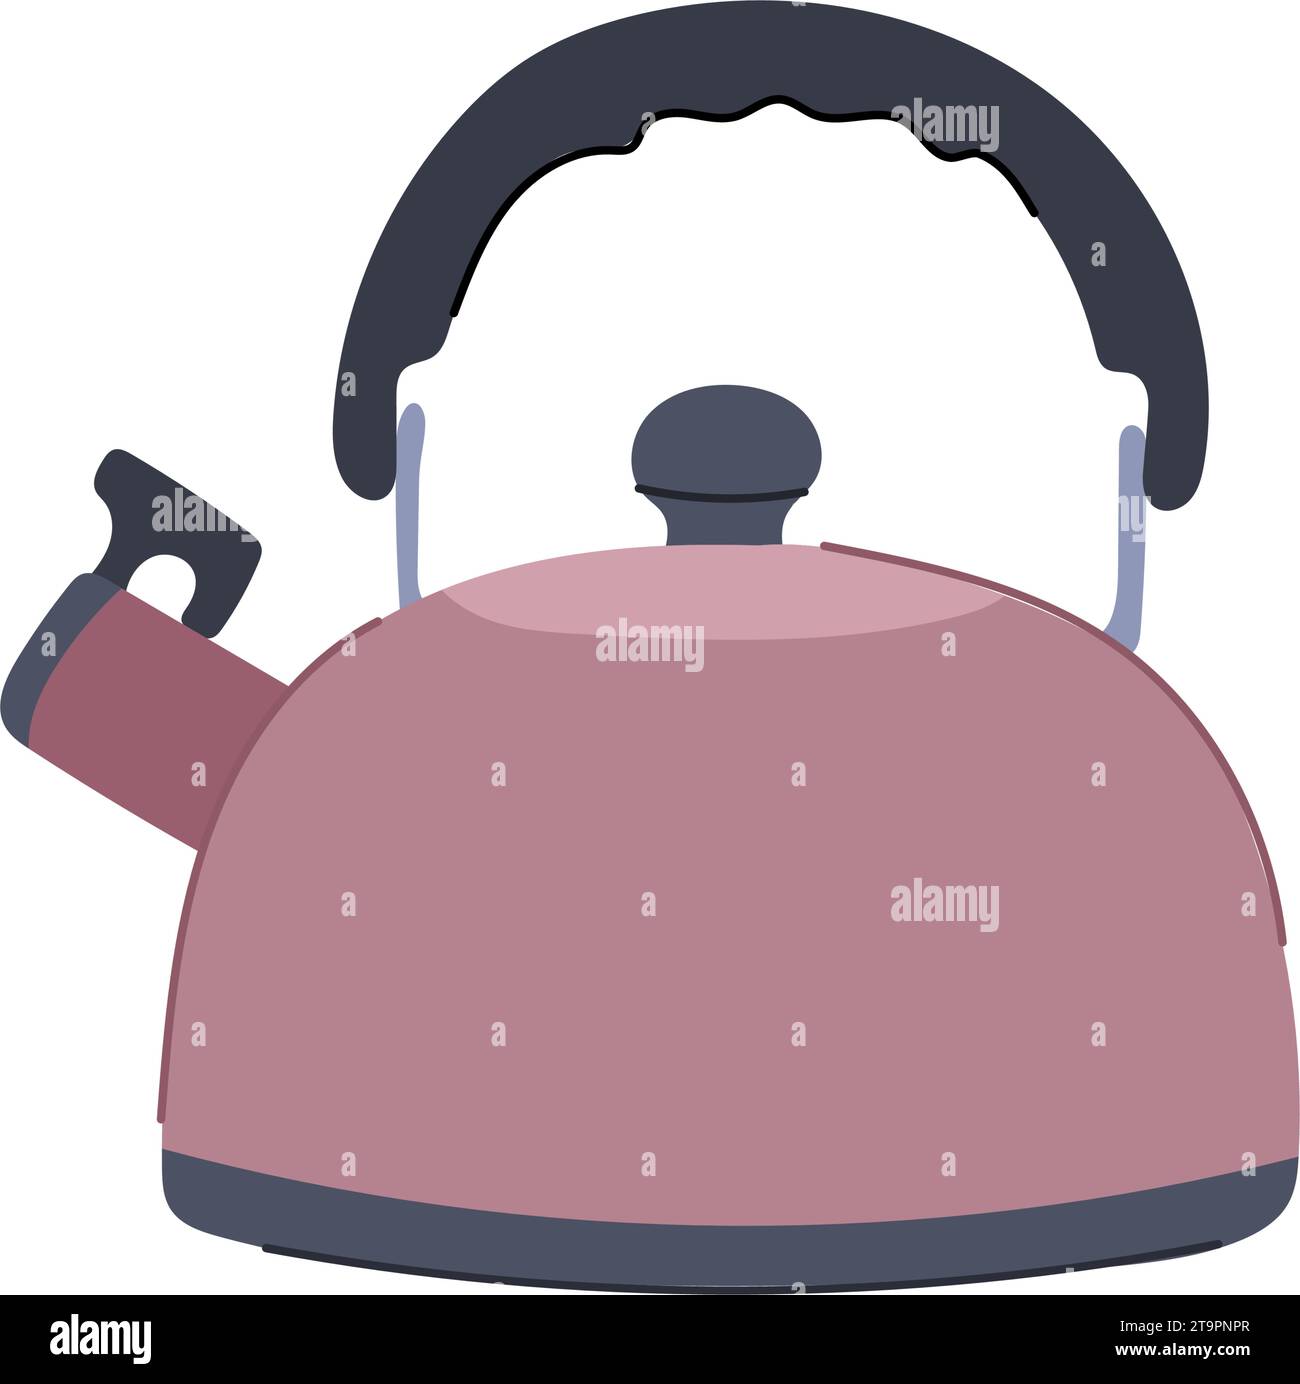 heat kettle cartoon vector illustration Stock Vector